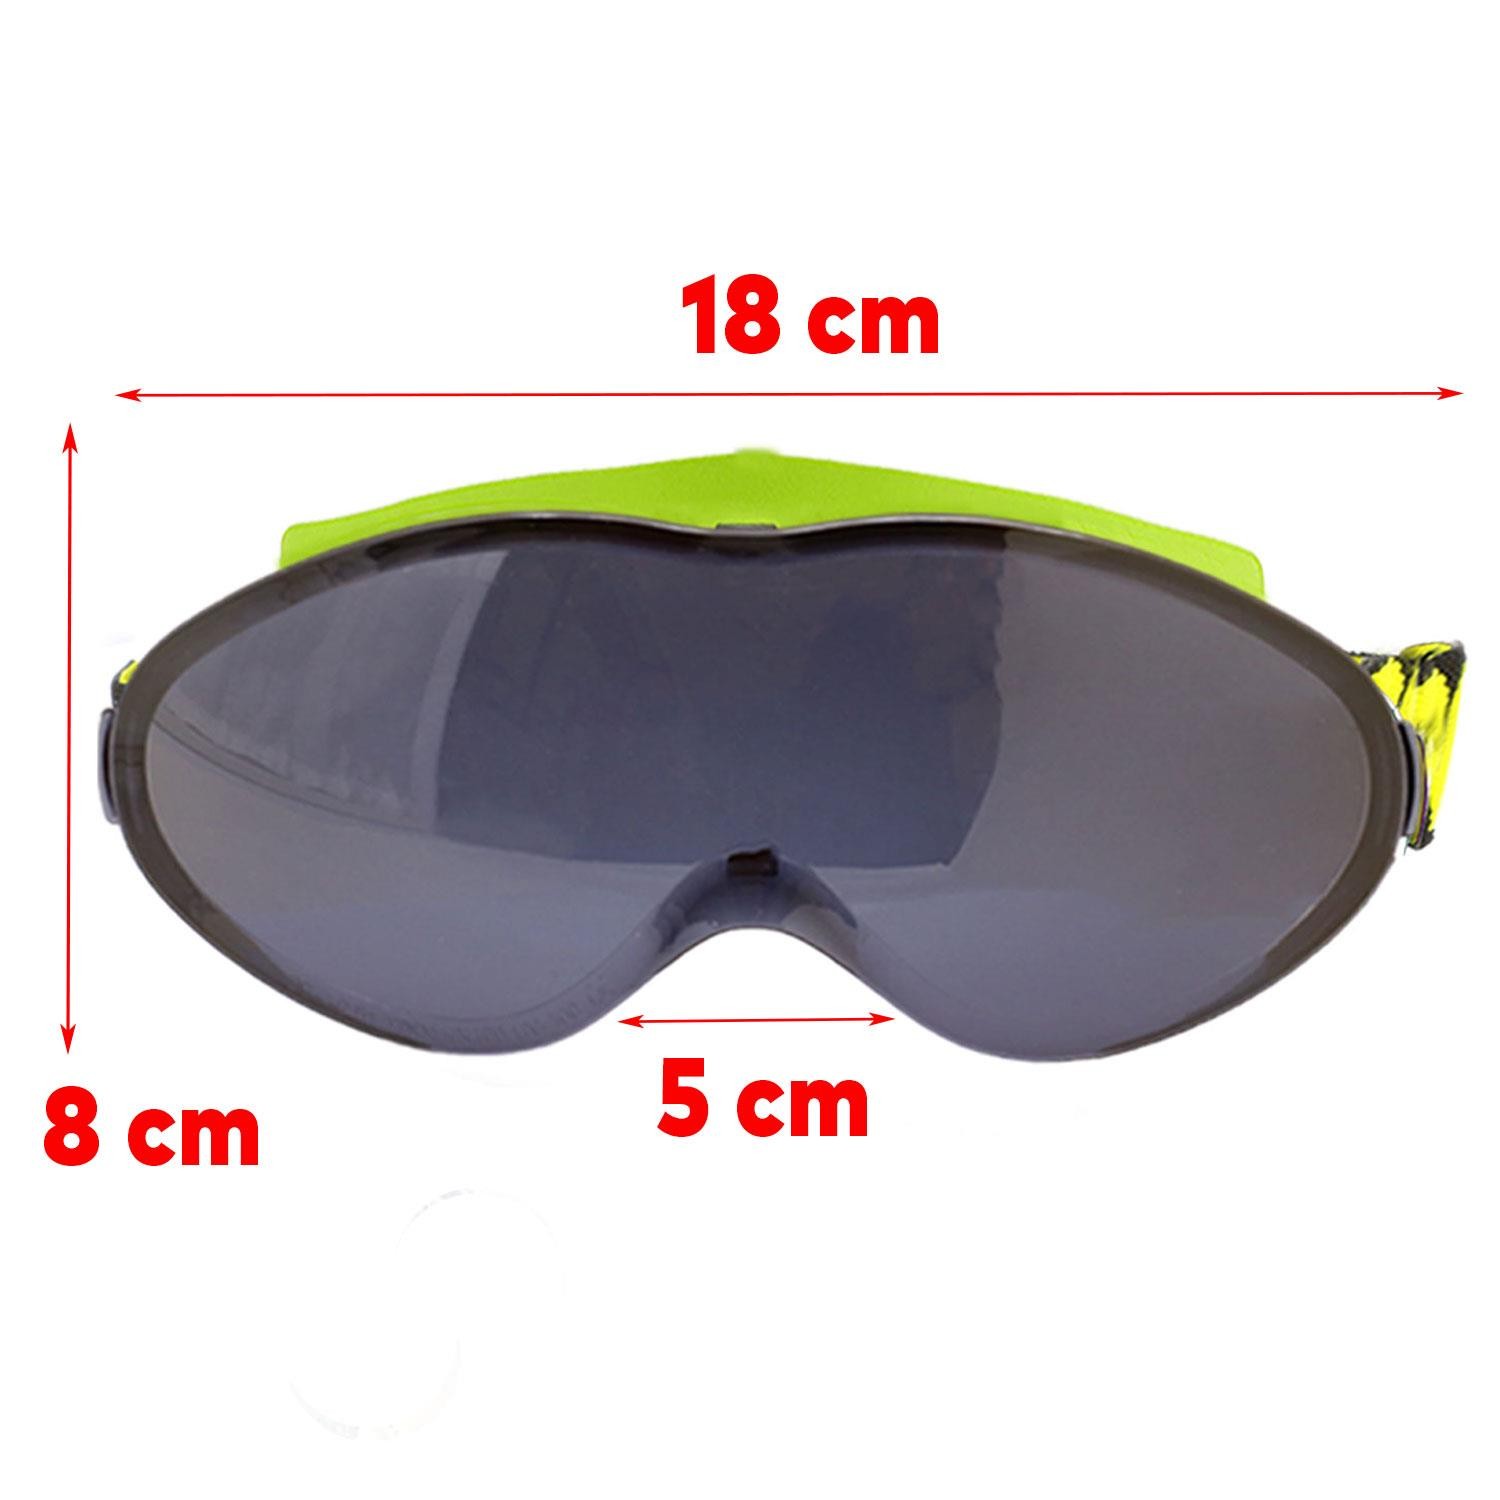 Bellasimo Kayak Gözlüğü Değiştirebilir Camlı Antifog Güneş Kar Gözlük Füme Snowboard Glasses Gözlük